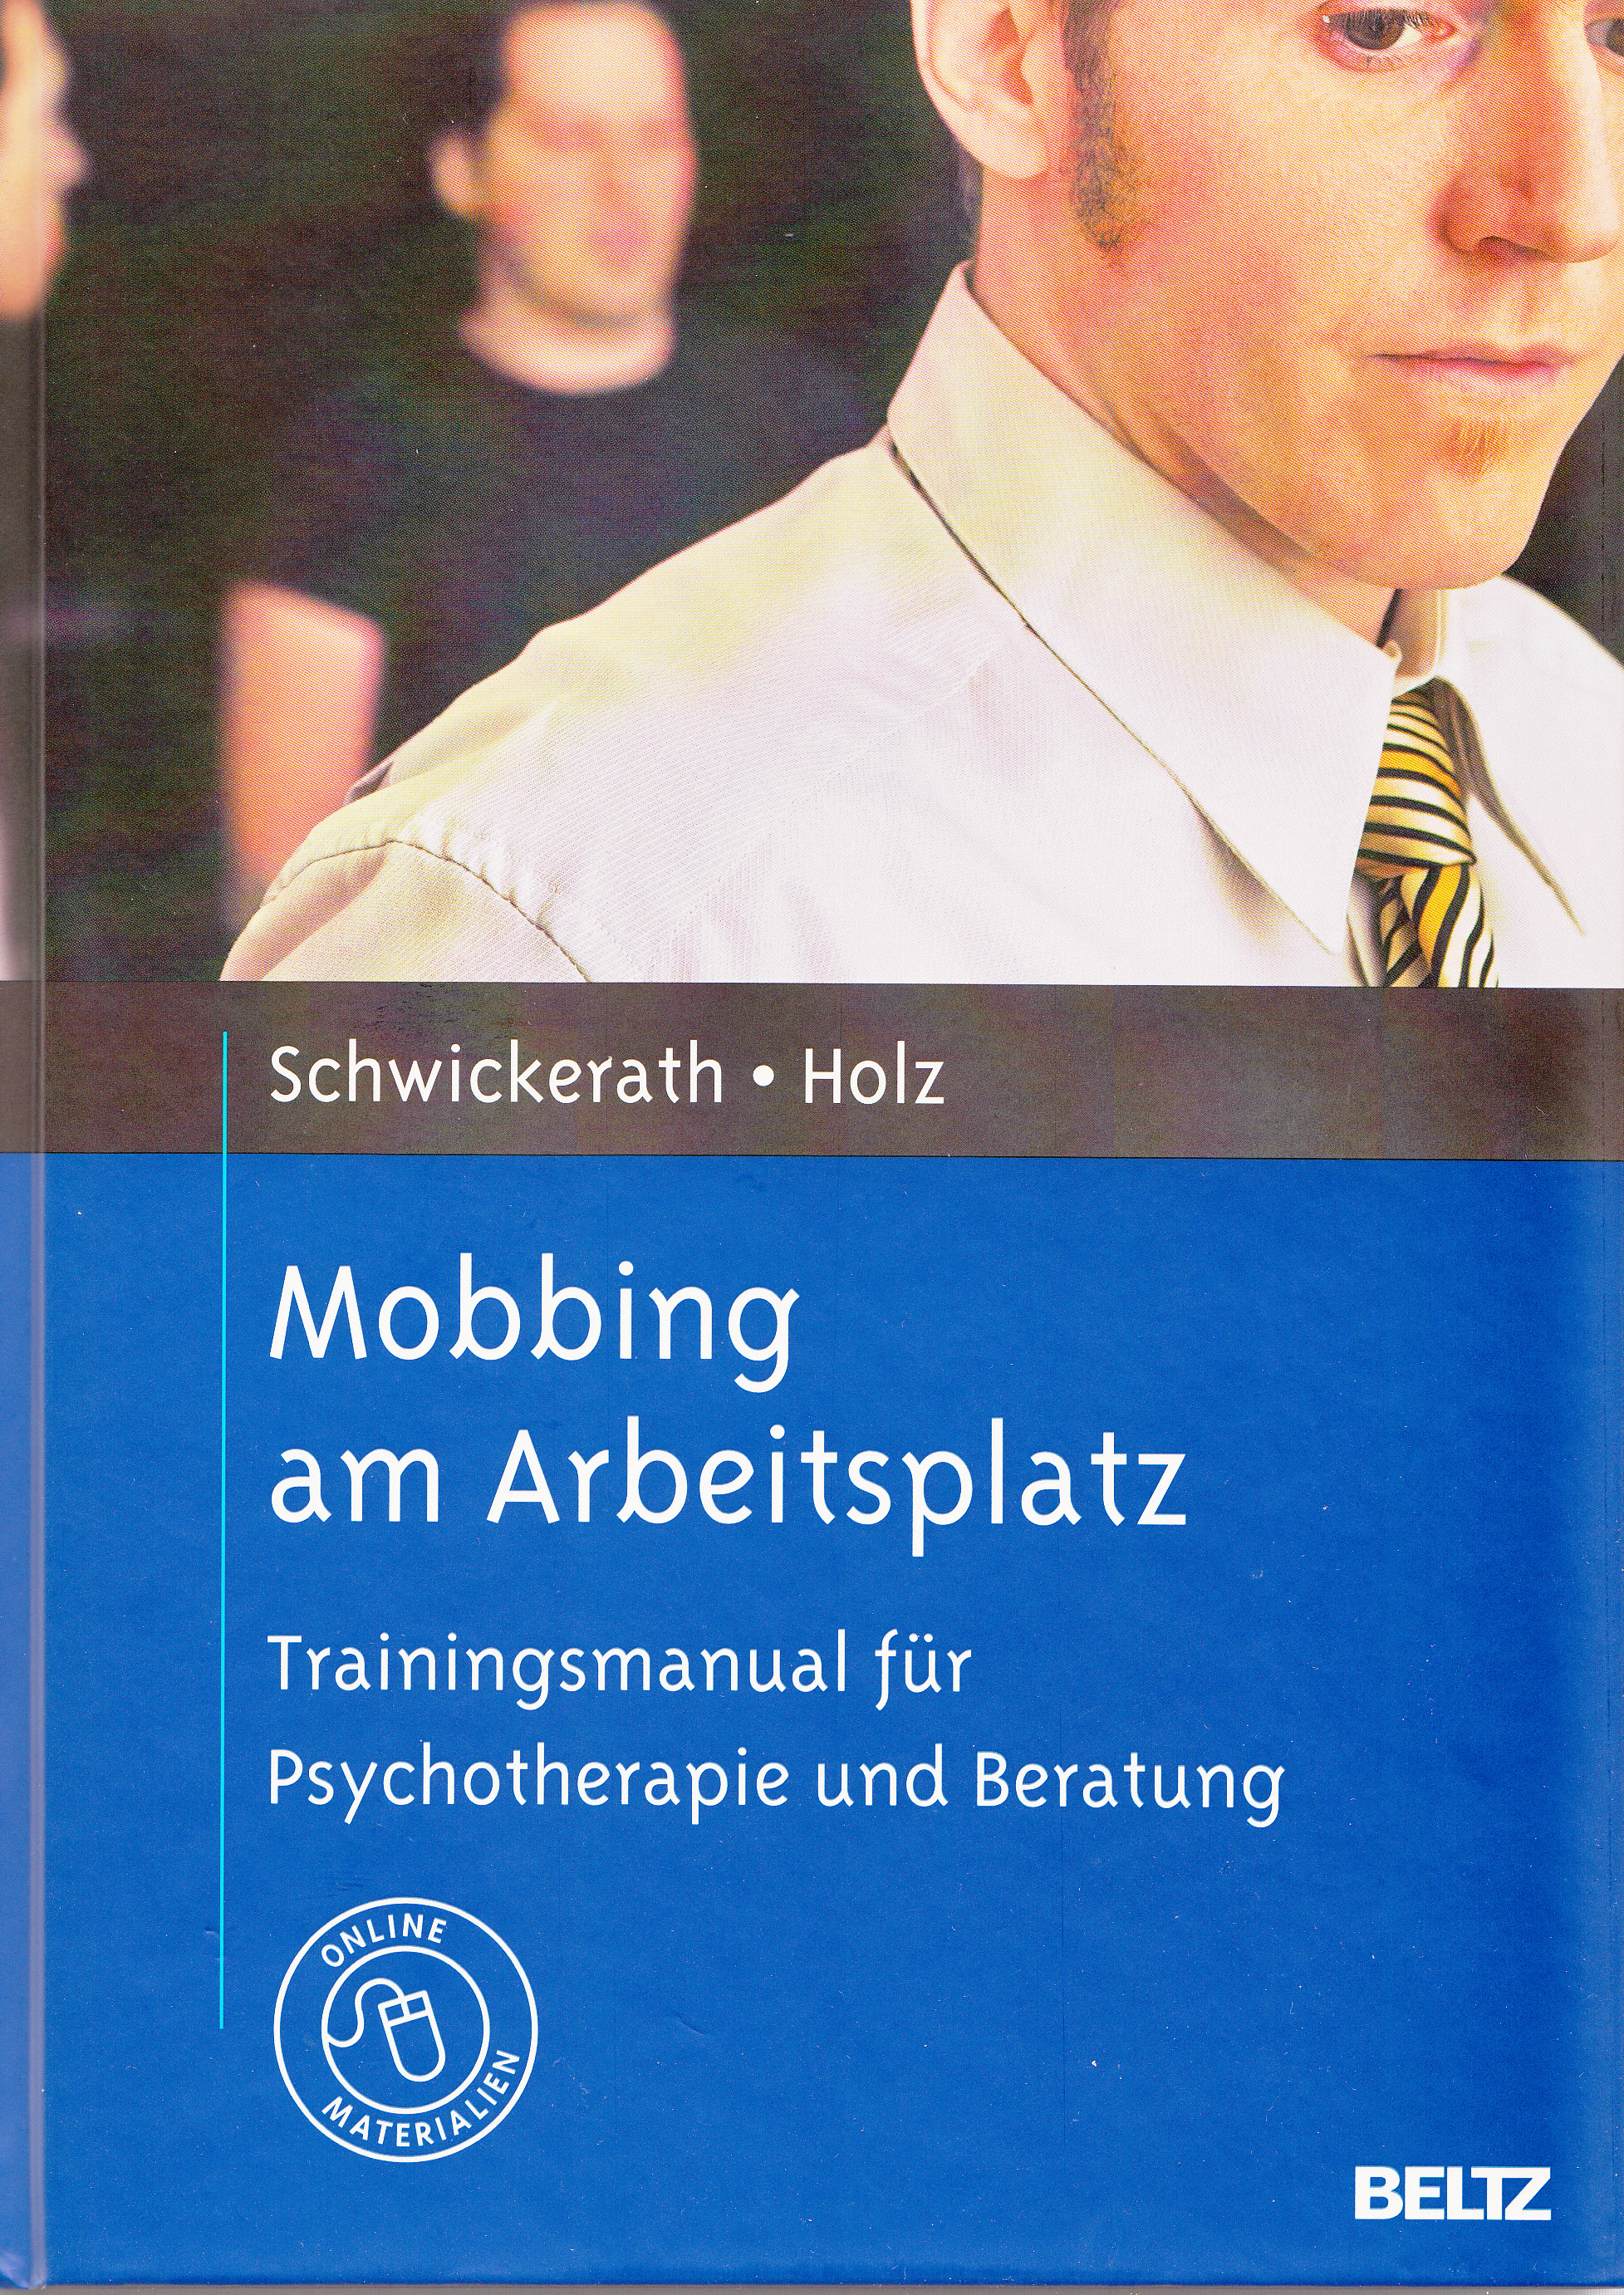 [BILD]Mobbing am Arbeitsplatz - Trainingsmanual für Psychotherapie und Beratung[/BILD]